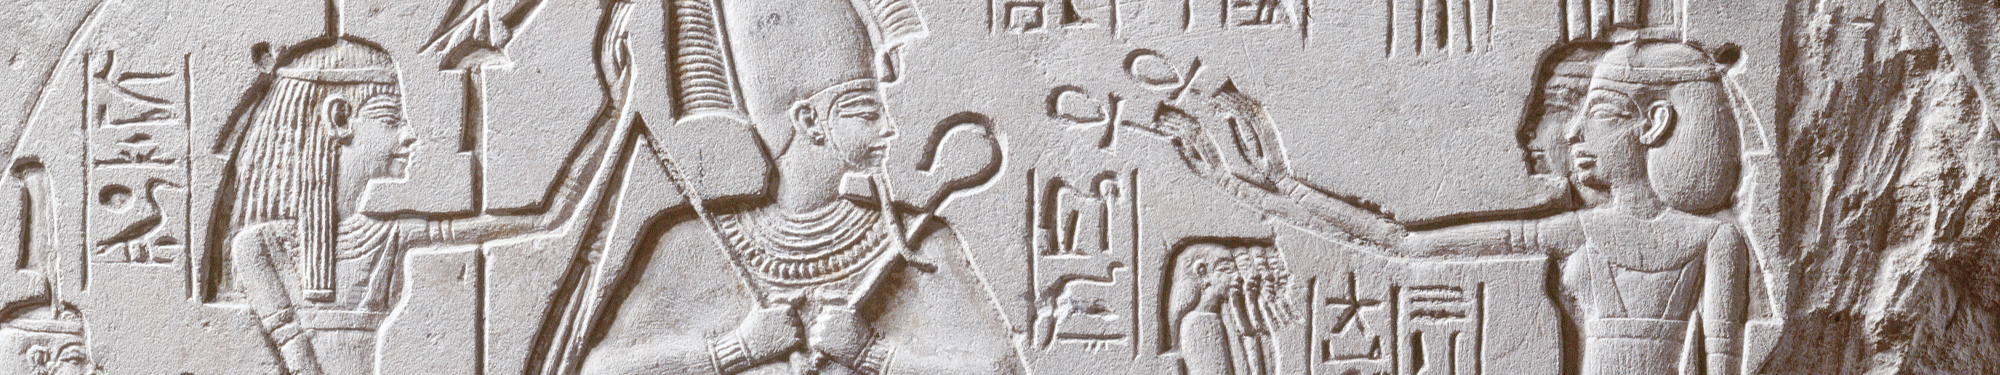 Egypt stone engraving 